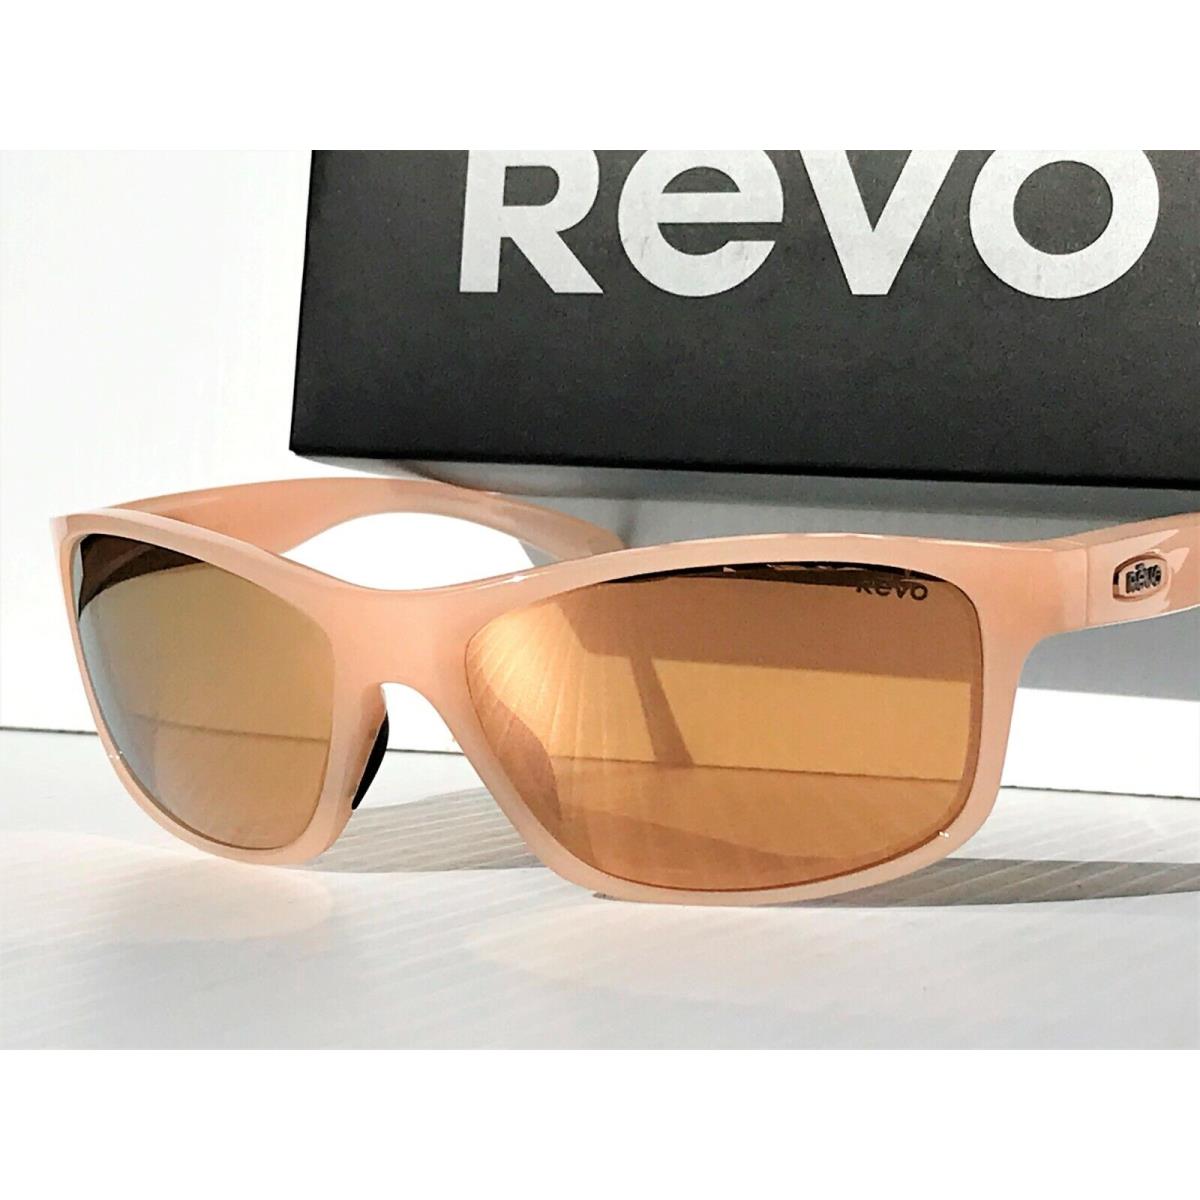 Revo sunglasses Harness - Blush Frame, Champagne Lens